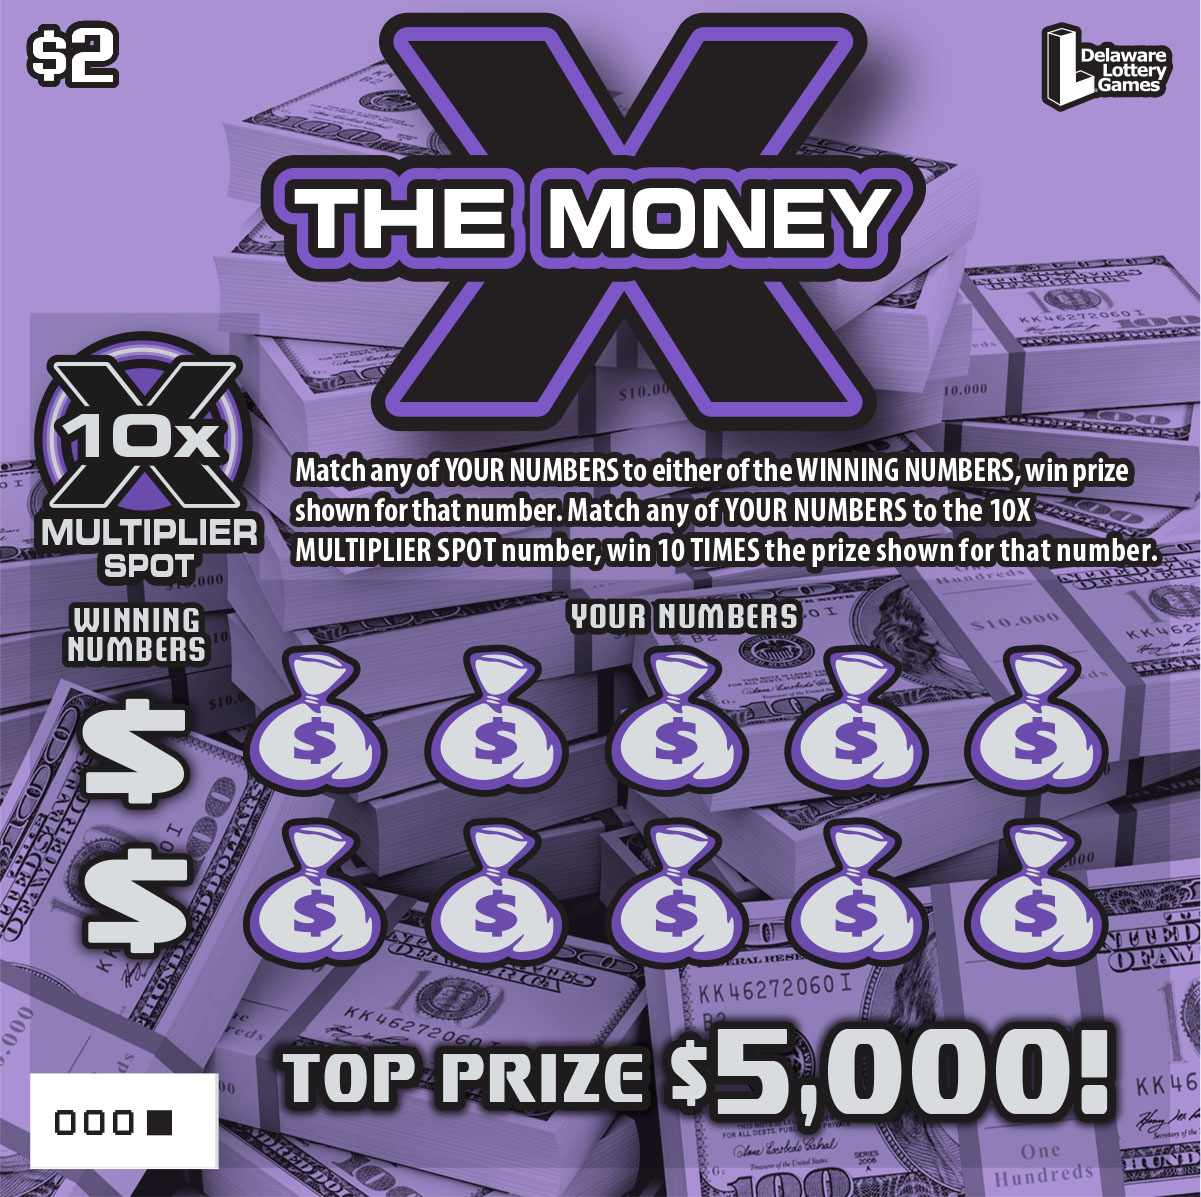 ($2) X THE MONEY